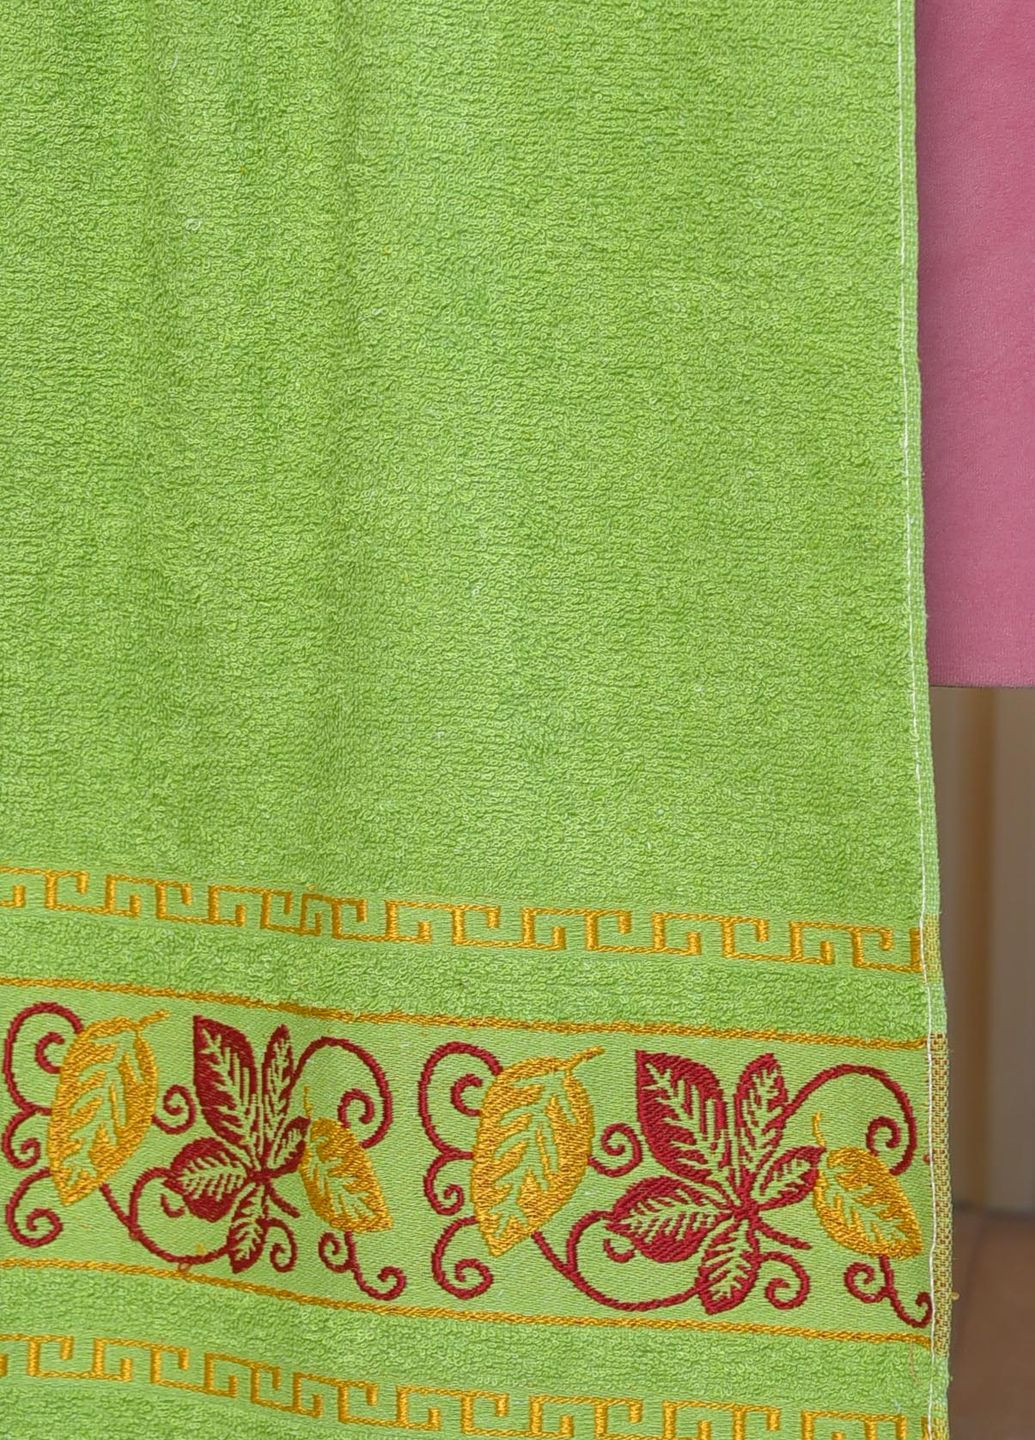 Let's Shop полотенце банное махровое зеленого цвета цветочный зеленый производство - Турция